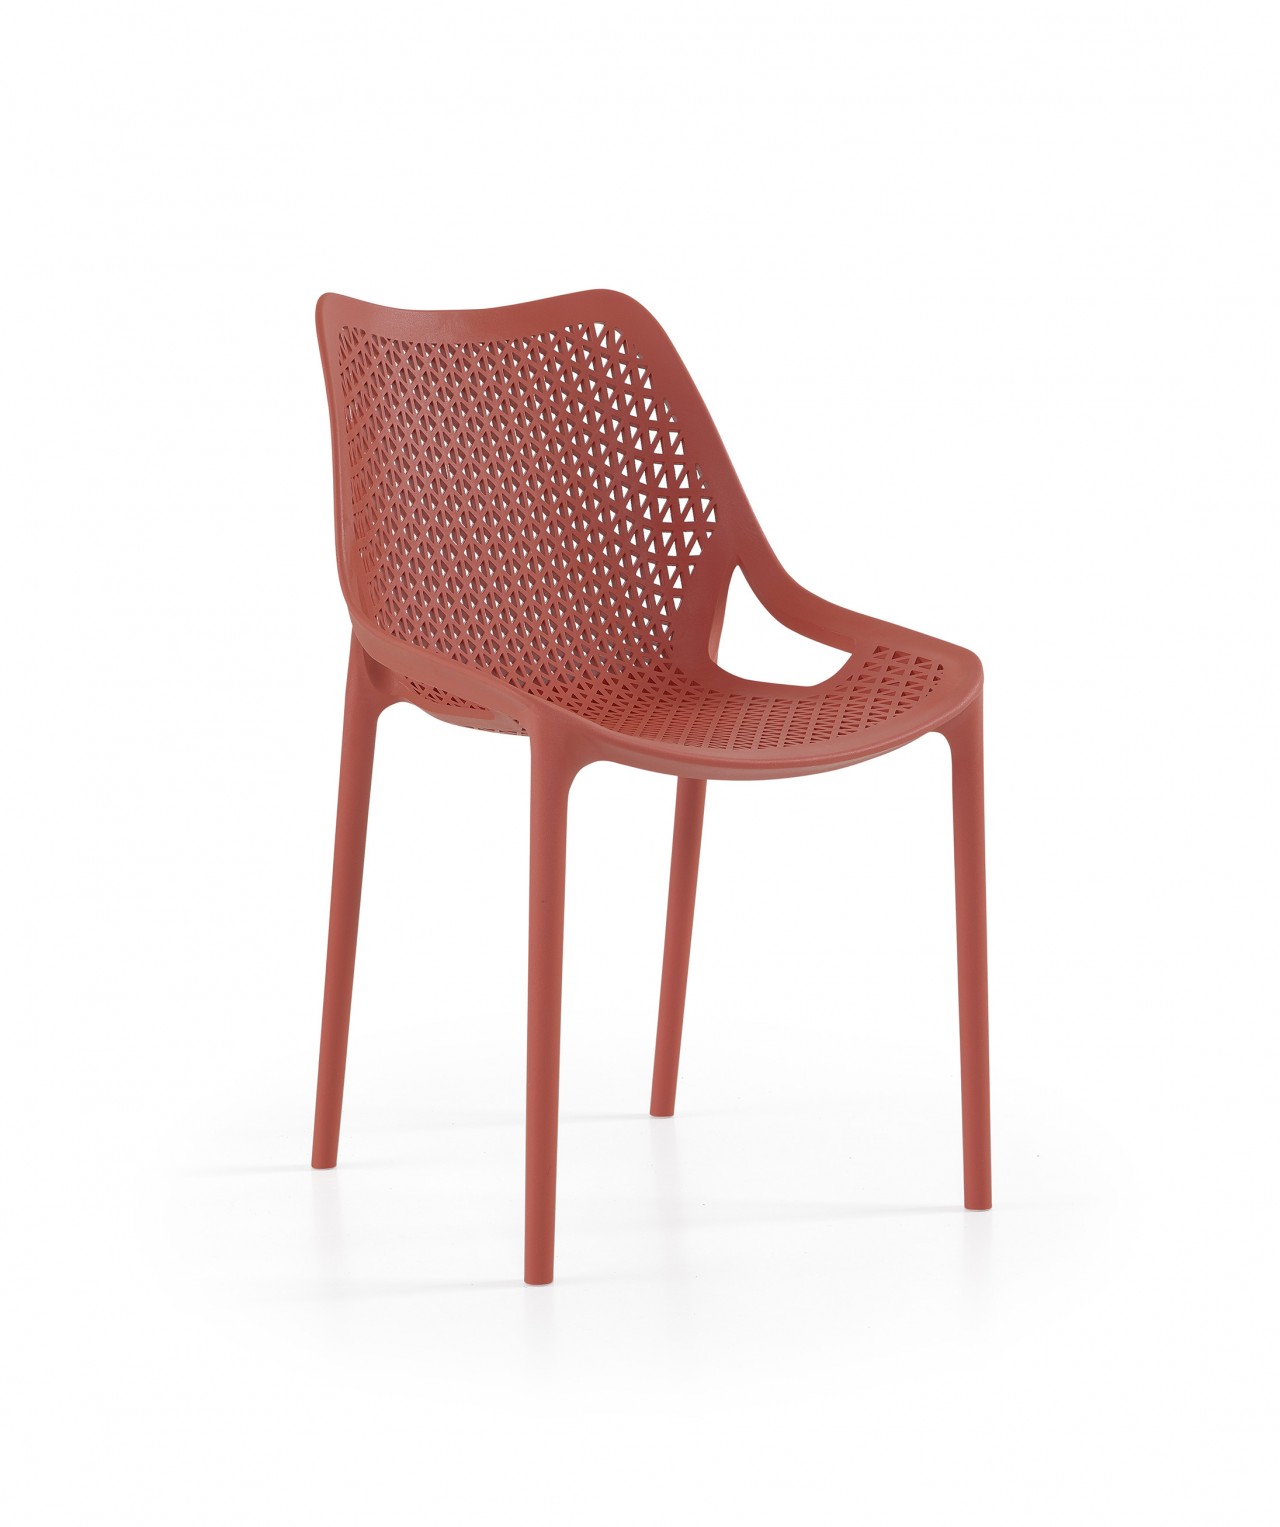 A cadeira Oxy é o produto ideal para quem procura conforto e segurança. Seu design moderno e ergonômico, ajuda a criar um ambiente de tranquilidade e relaxamento.